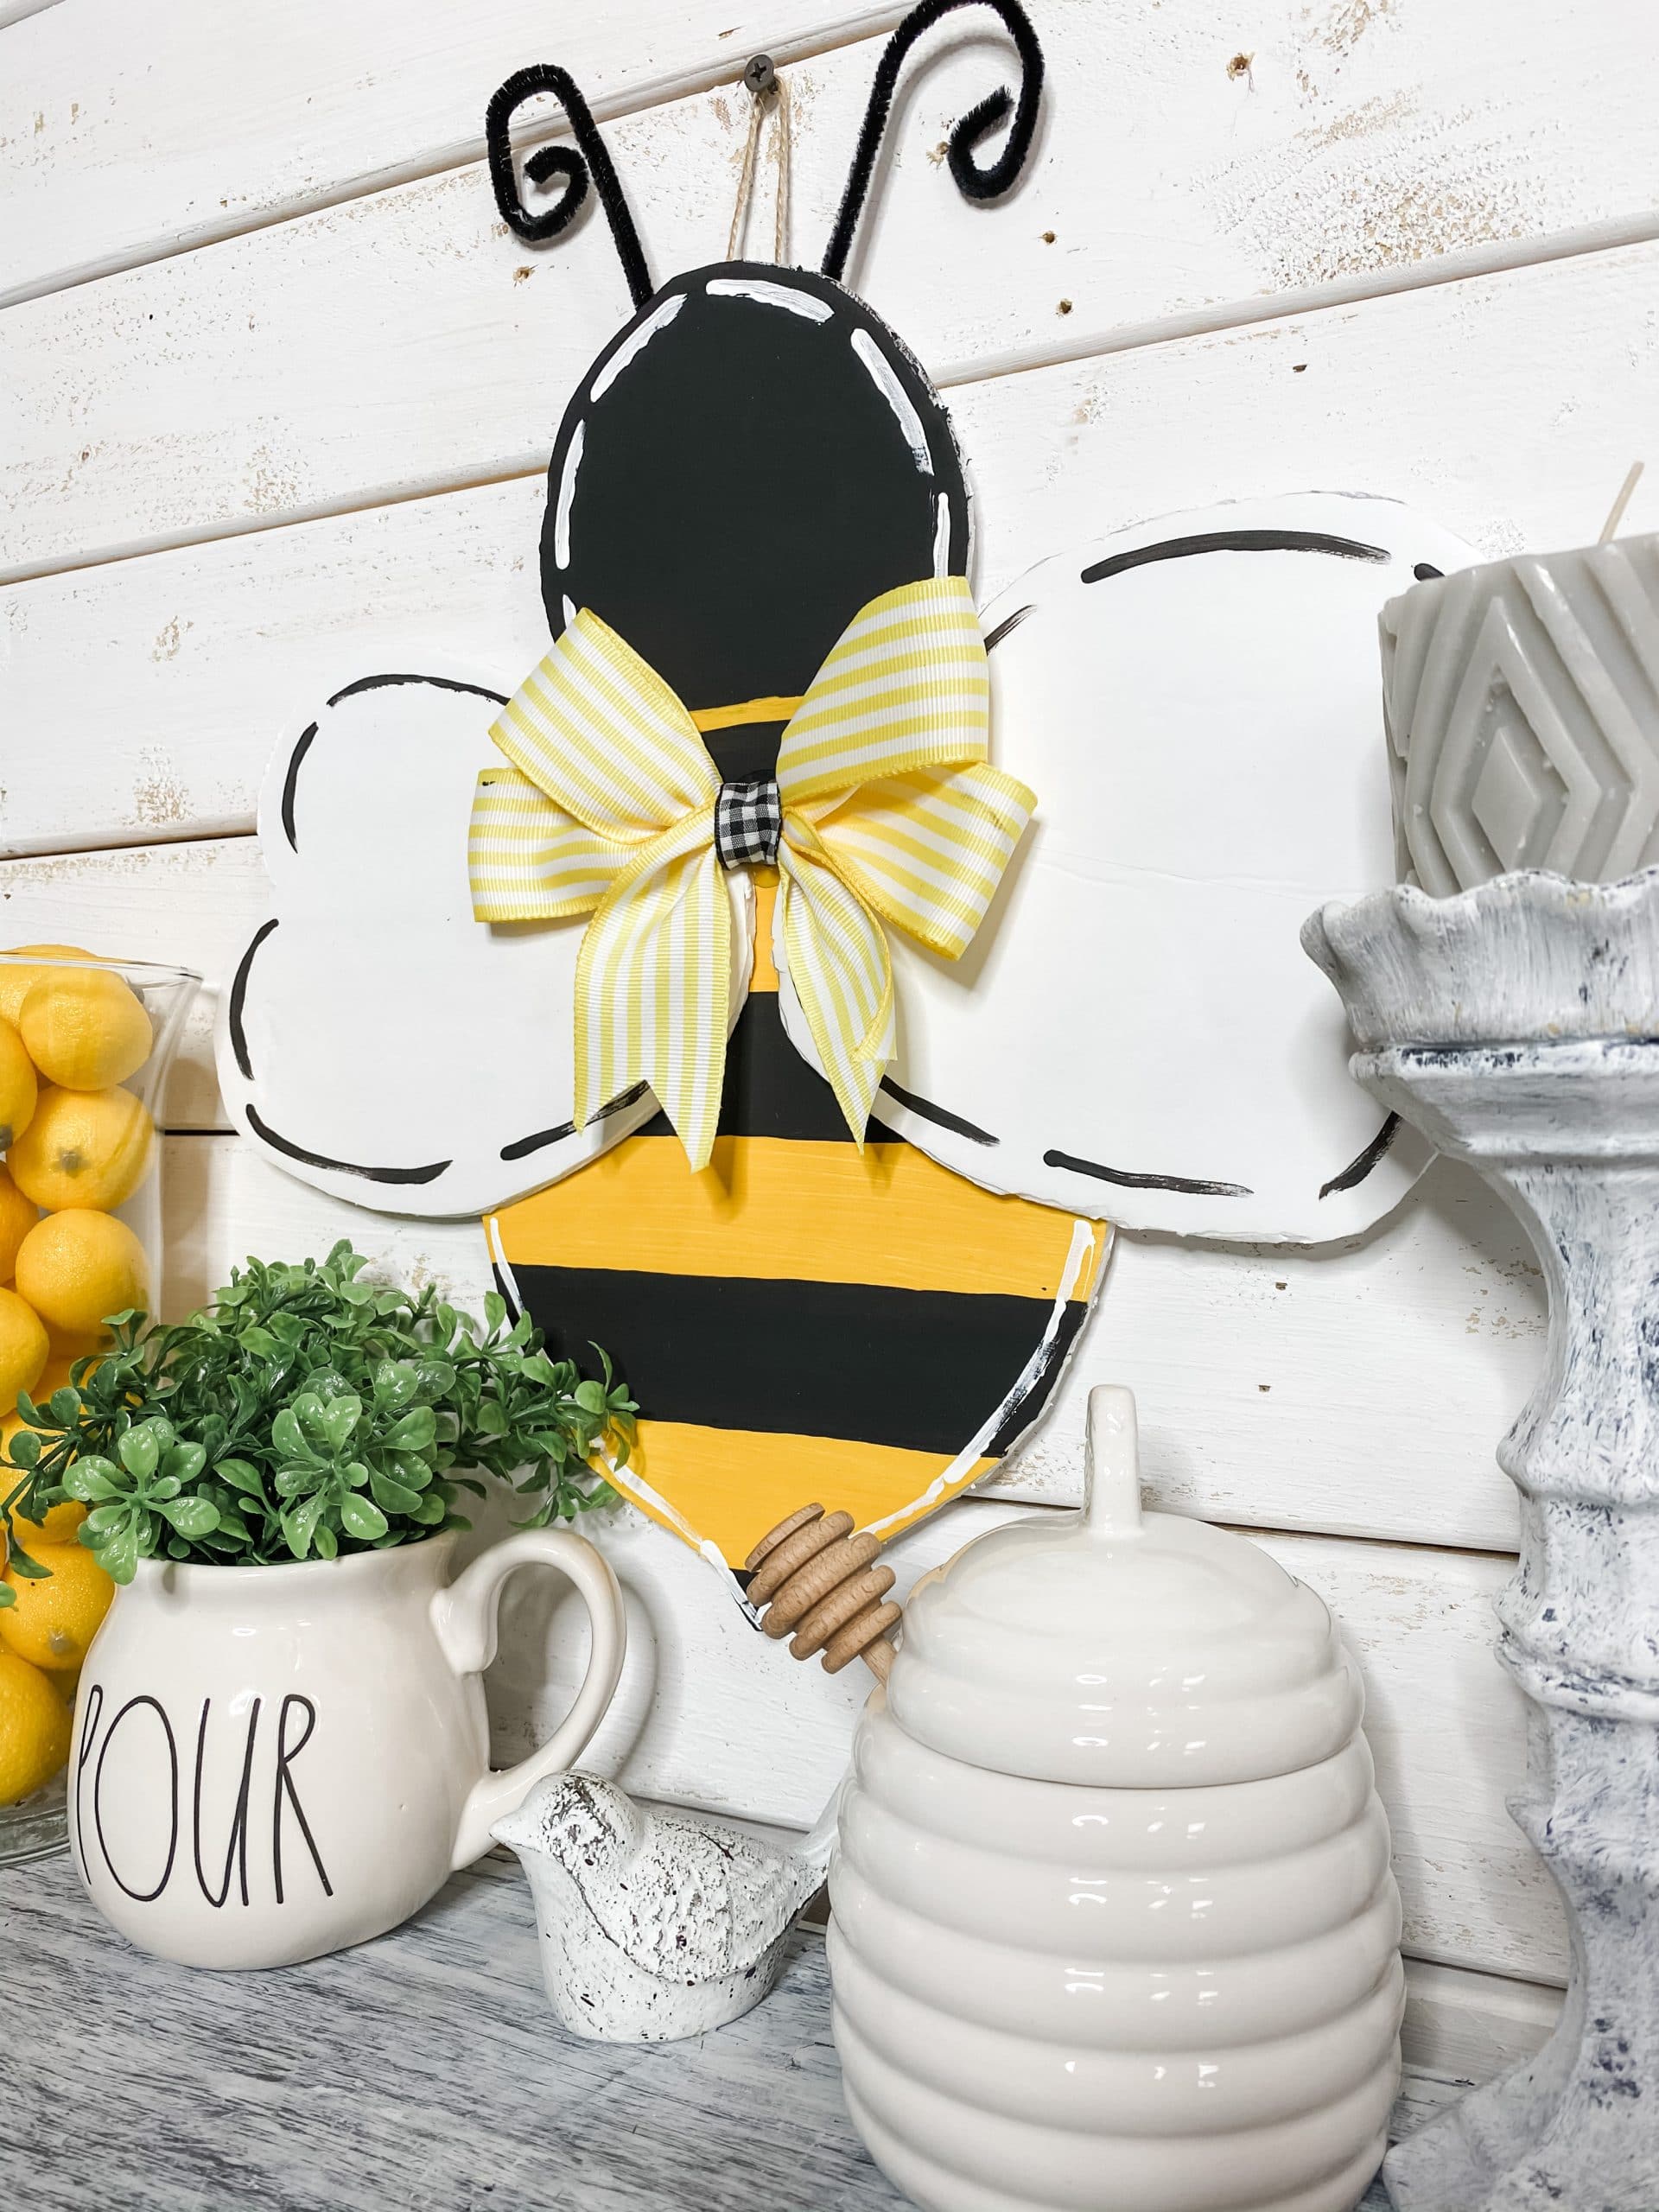 DIY Bumble Bee Door Hanger with Free Template